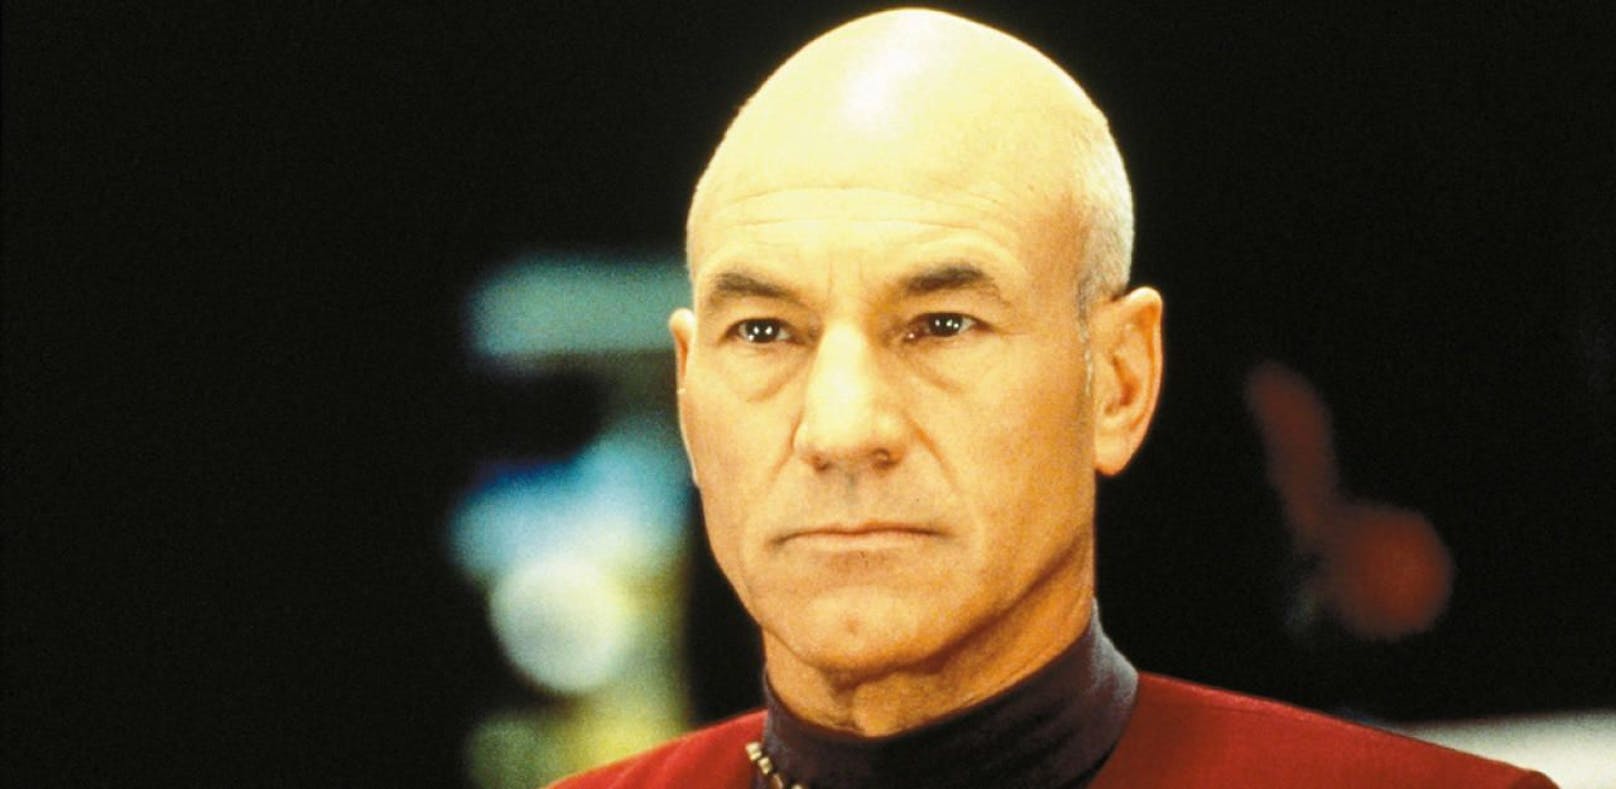 Patrick Stewart kehrt als Captain Picard zurück